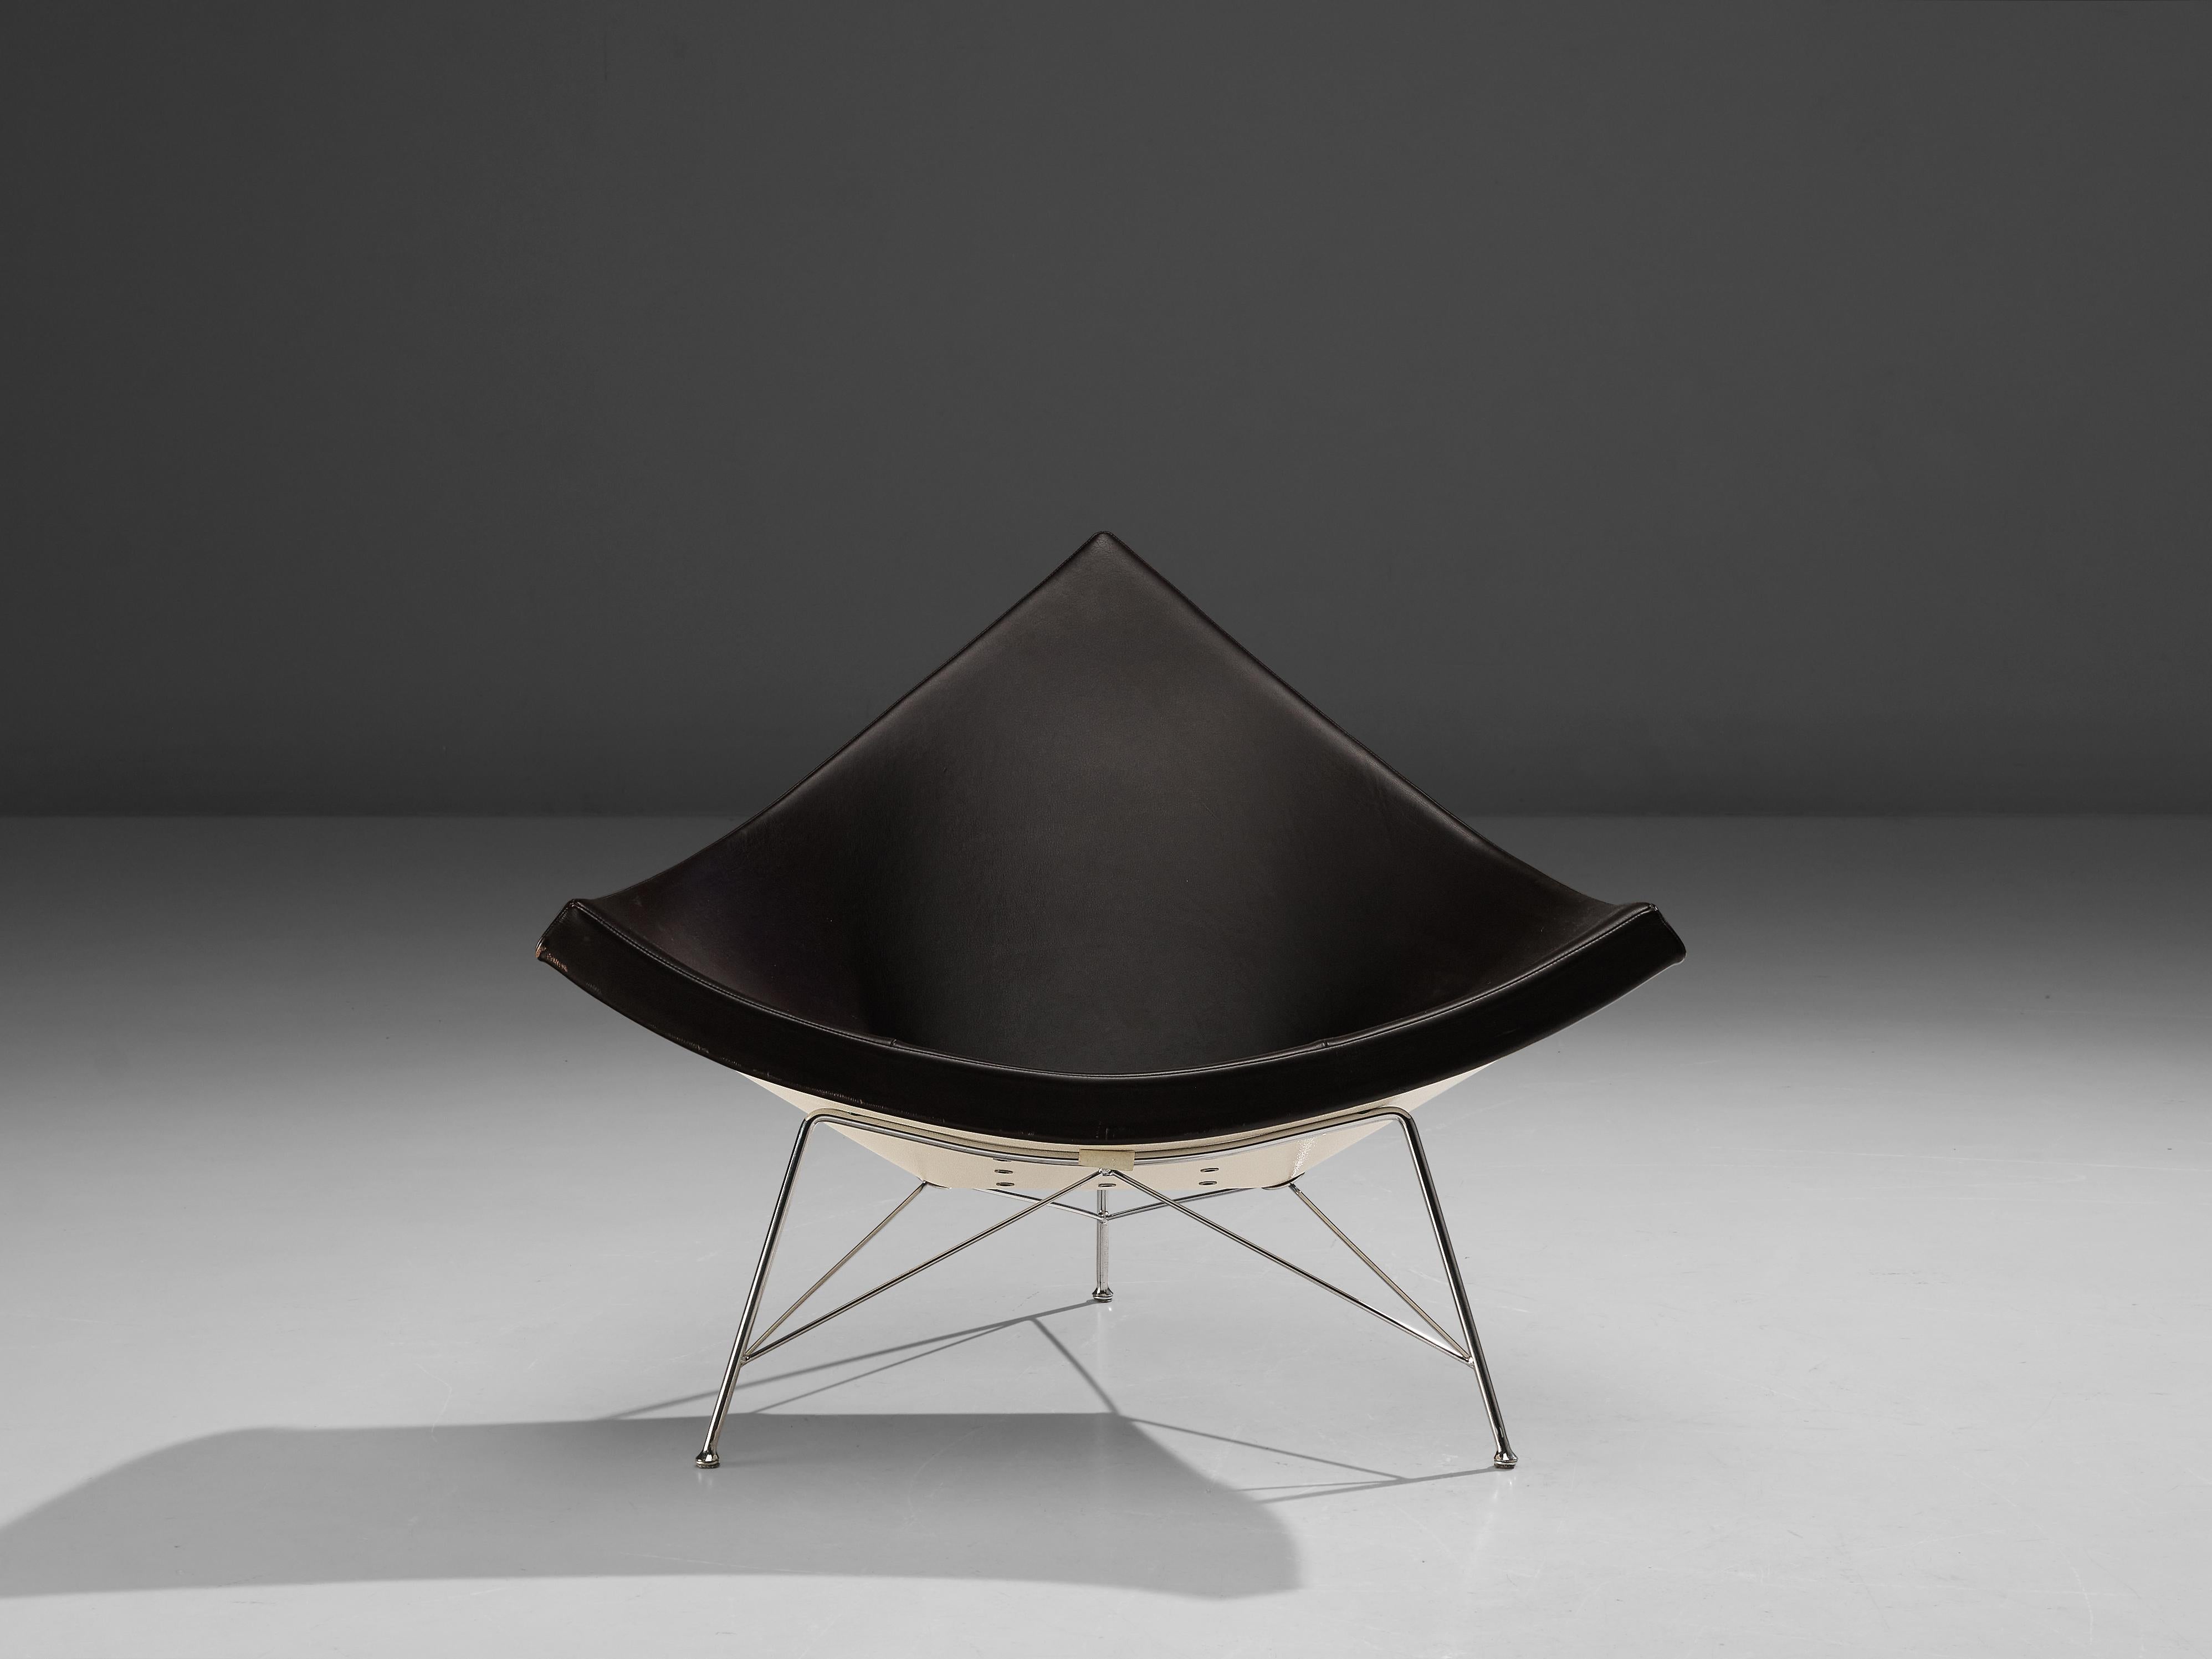 George Nelson, 'Coconut' Lounge Chair, Fiberglas, Lederpolsterung, Stahl, Vereinigte Staaten, Entwurf 1955, spätere Produktion

Der Loungesessel 